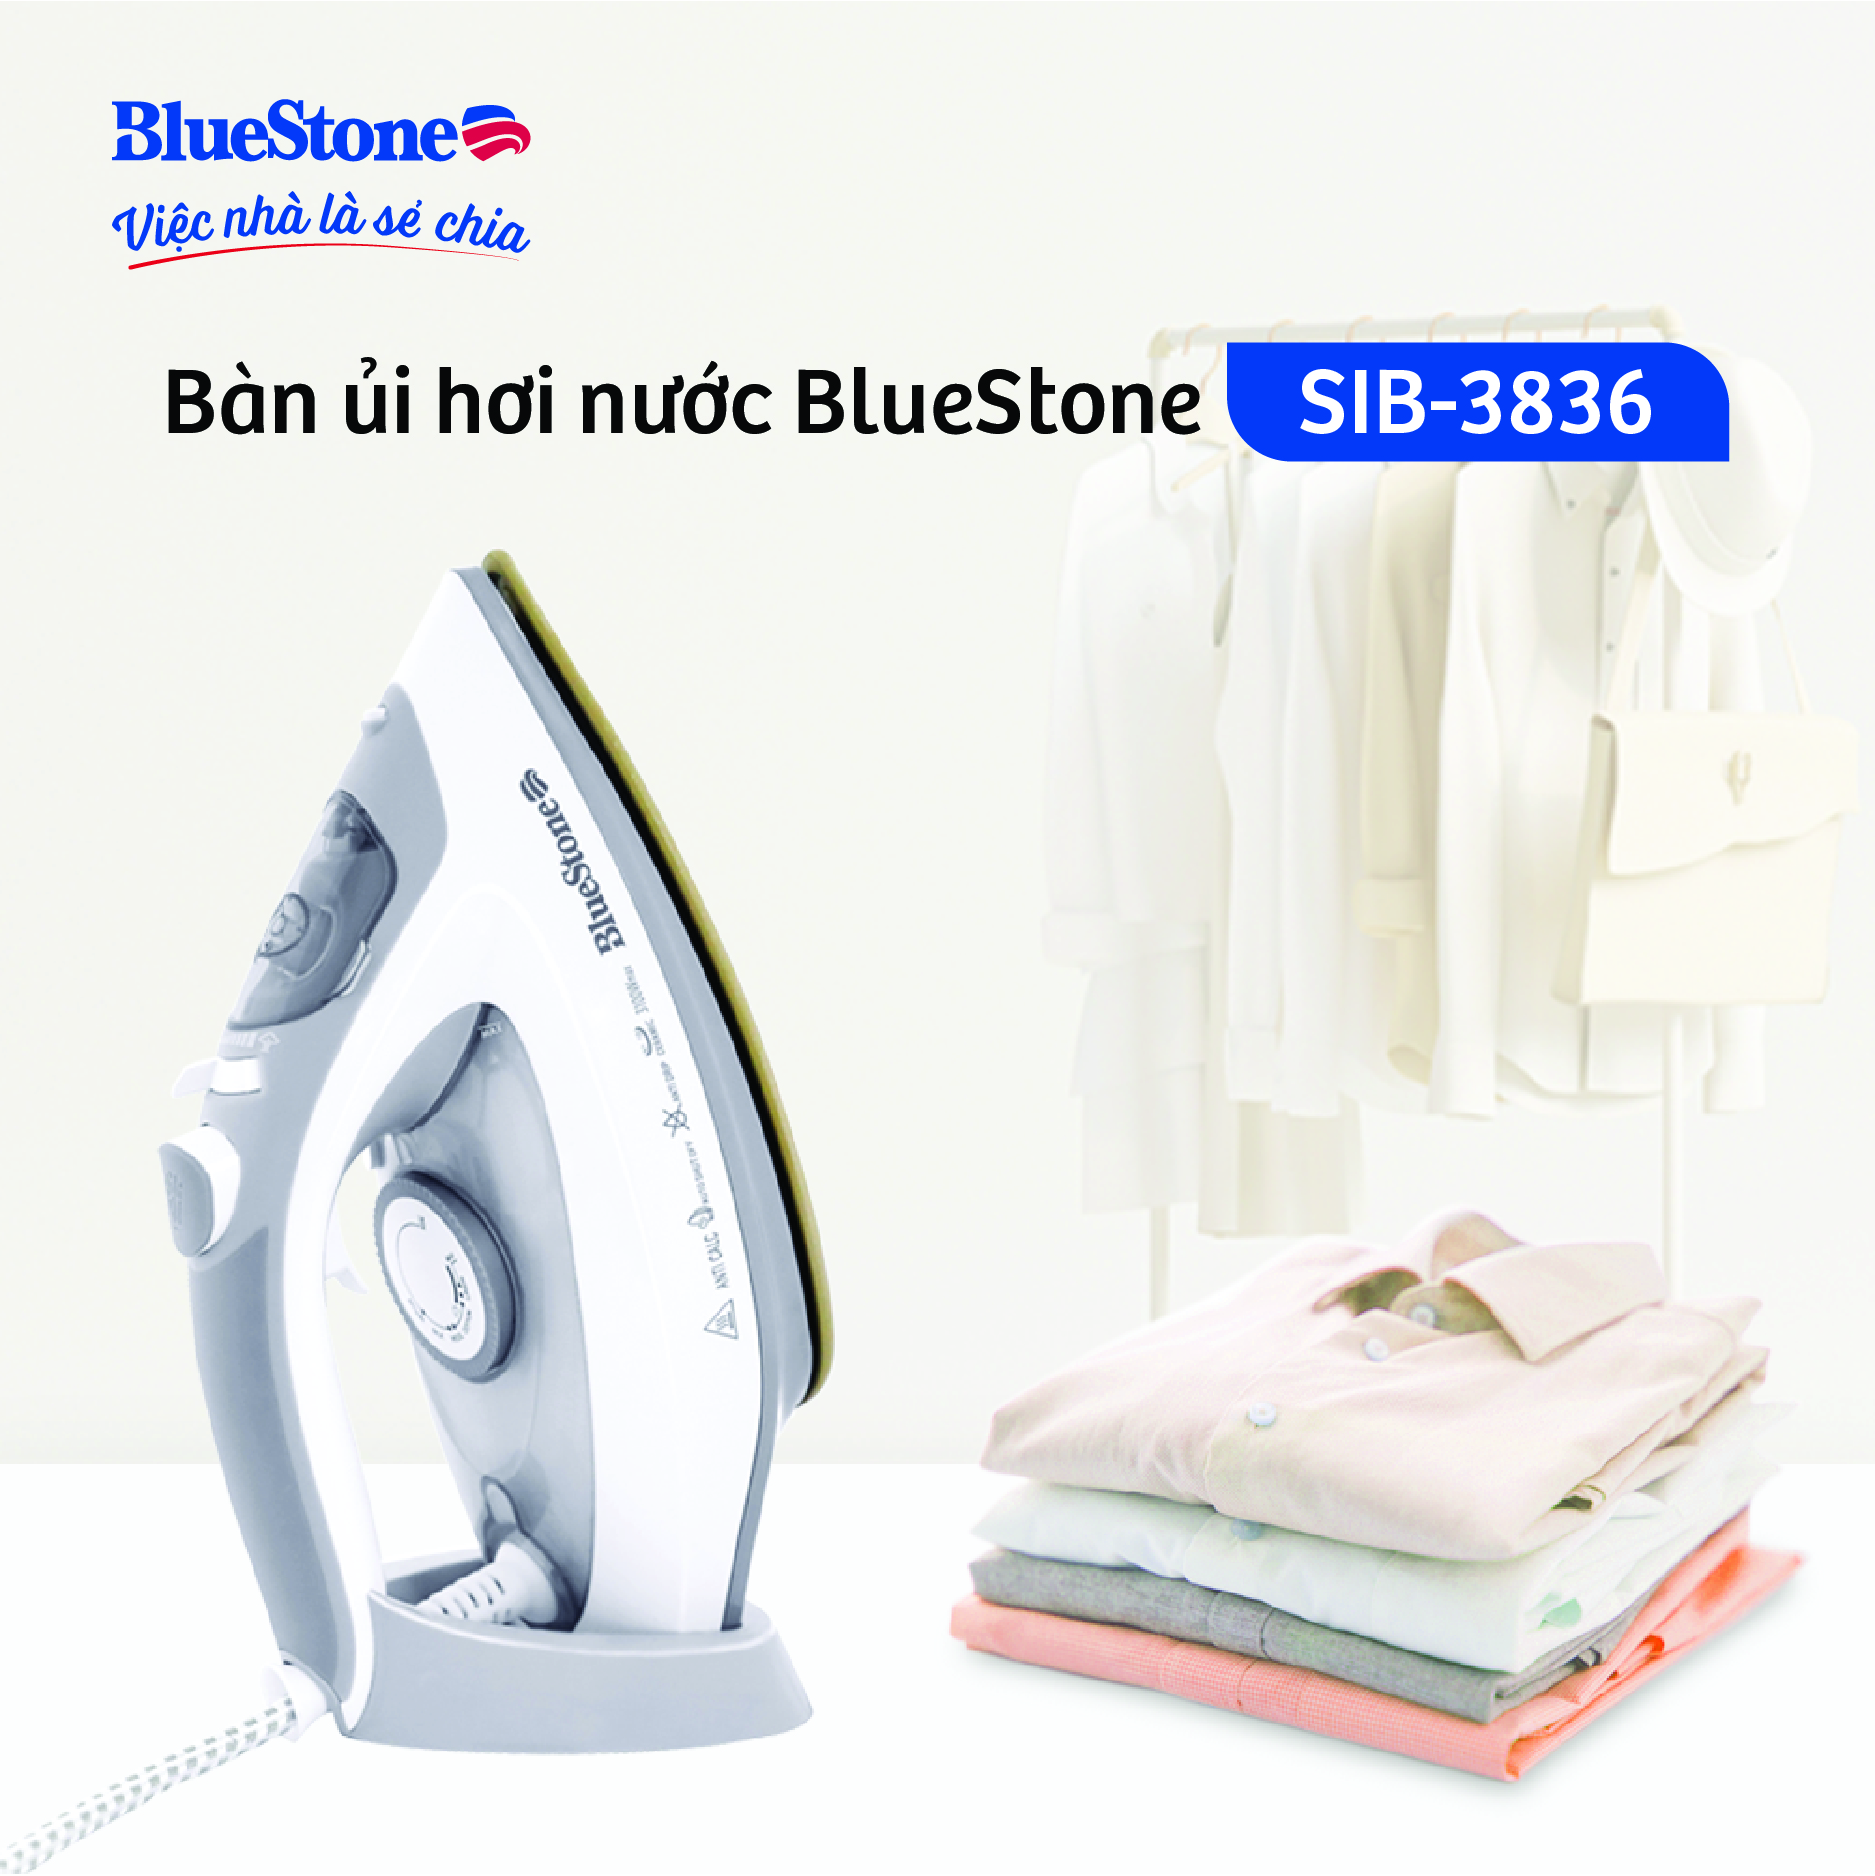 Bàn ủi hơi nước BlueStone SIB-3836 - Mặt đế Ceramic cao cấp - Công suất 2600 - 3100W - Bảo...